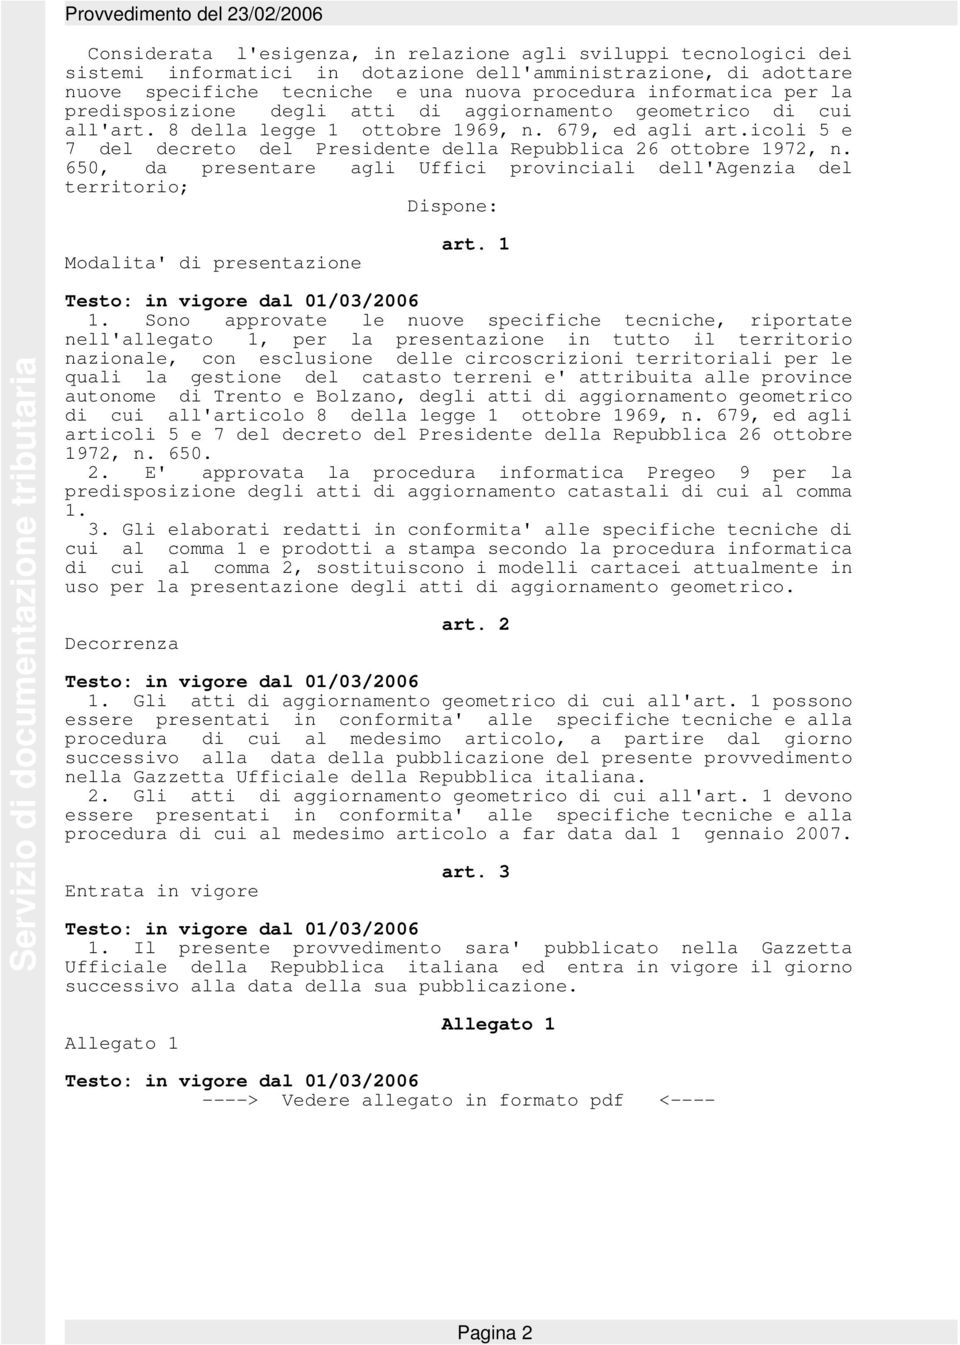 icoli 5 e 7 del decreto del Presidente della Repubblica 26 ottobre 1972, n. 650, da presentare agli Uffici provinciali dell'agenzia del territorio; Dispone: Modalita' di presentazione art.